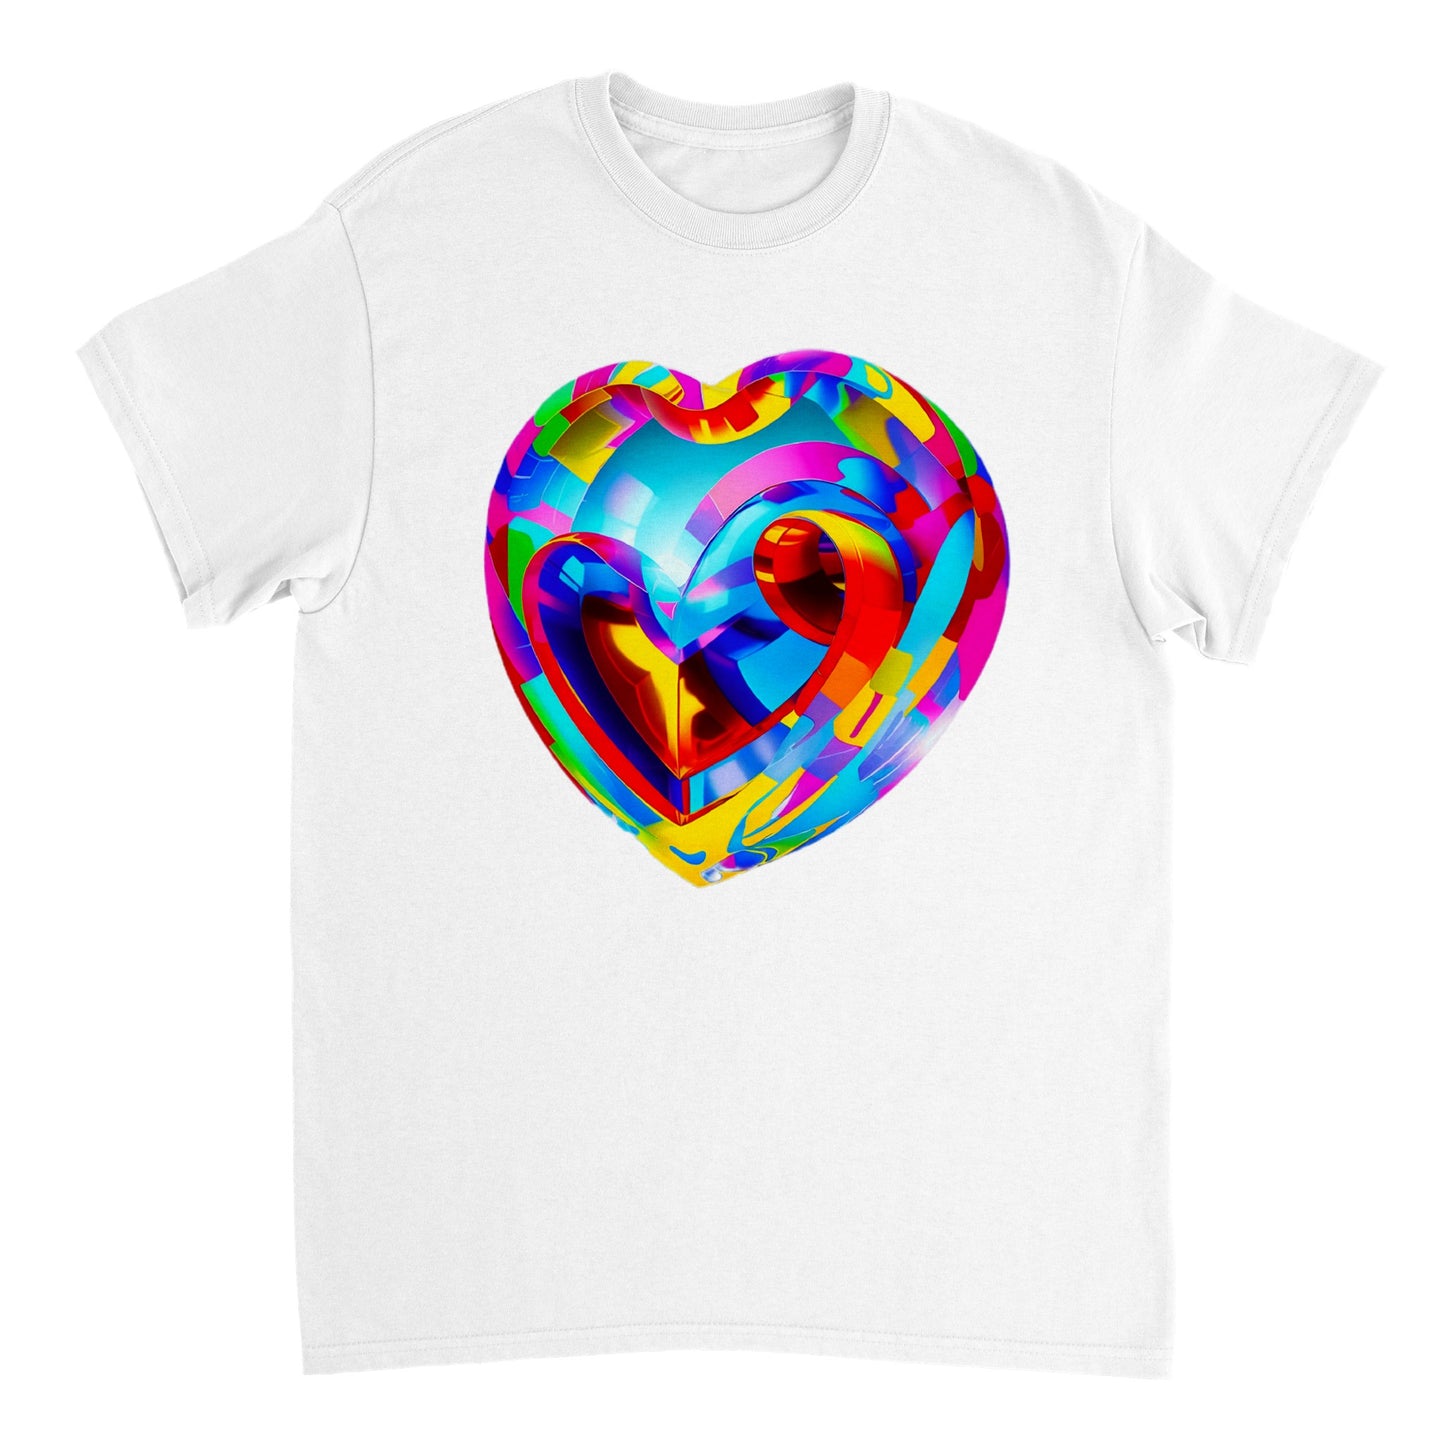 Love Heart - Heavyweight Unisex Crewneck T-shirt 94